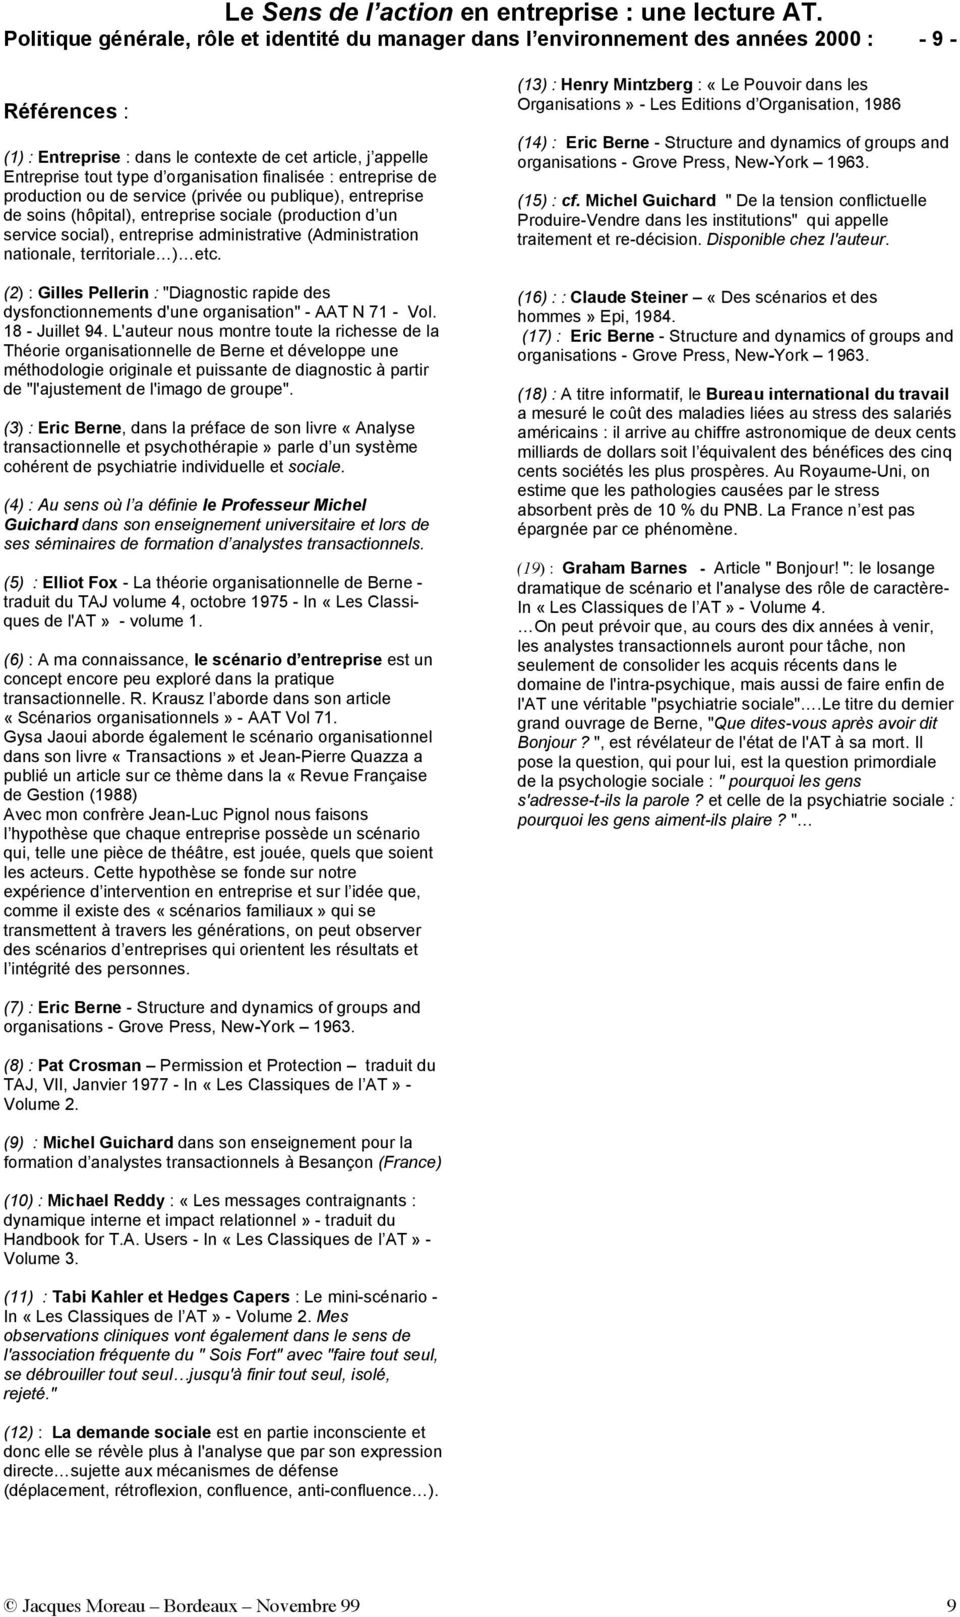 (Administration nationale, territoriale ) etc. (2) : Gilles Pellerin : "Diagnostic rapide des dysfonctionnements d'une organisation" - AAT N 71 - Vol. 18 - Juillet 94.